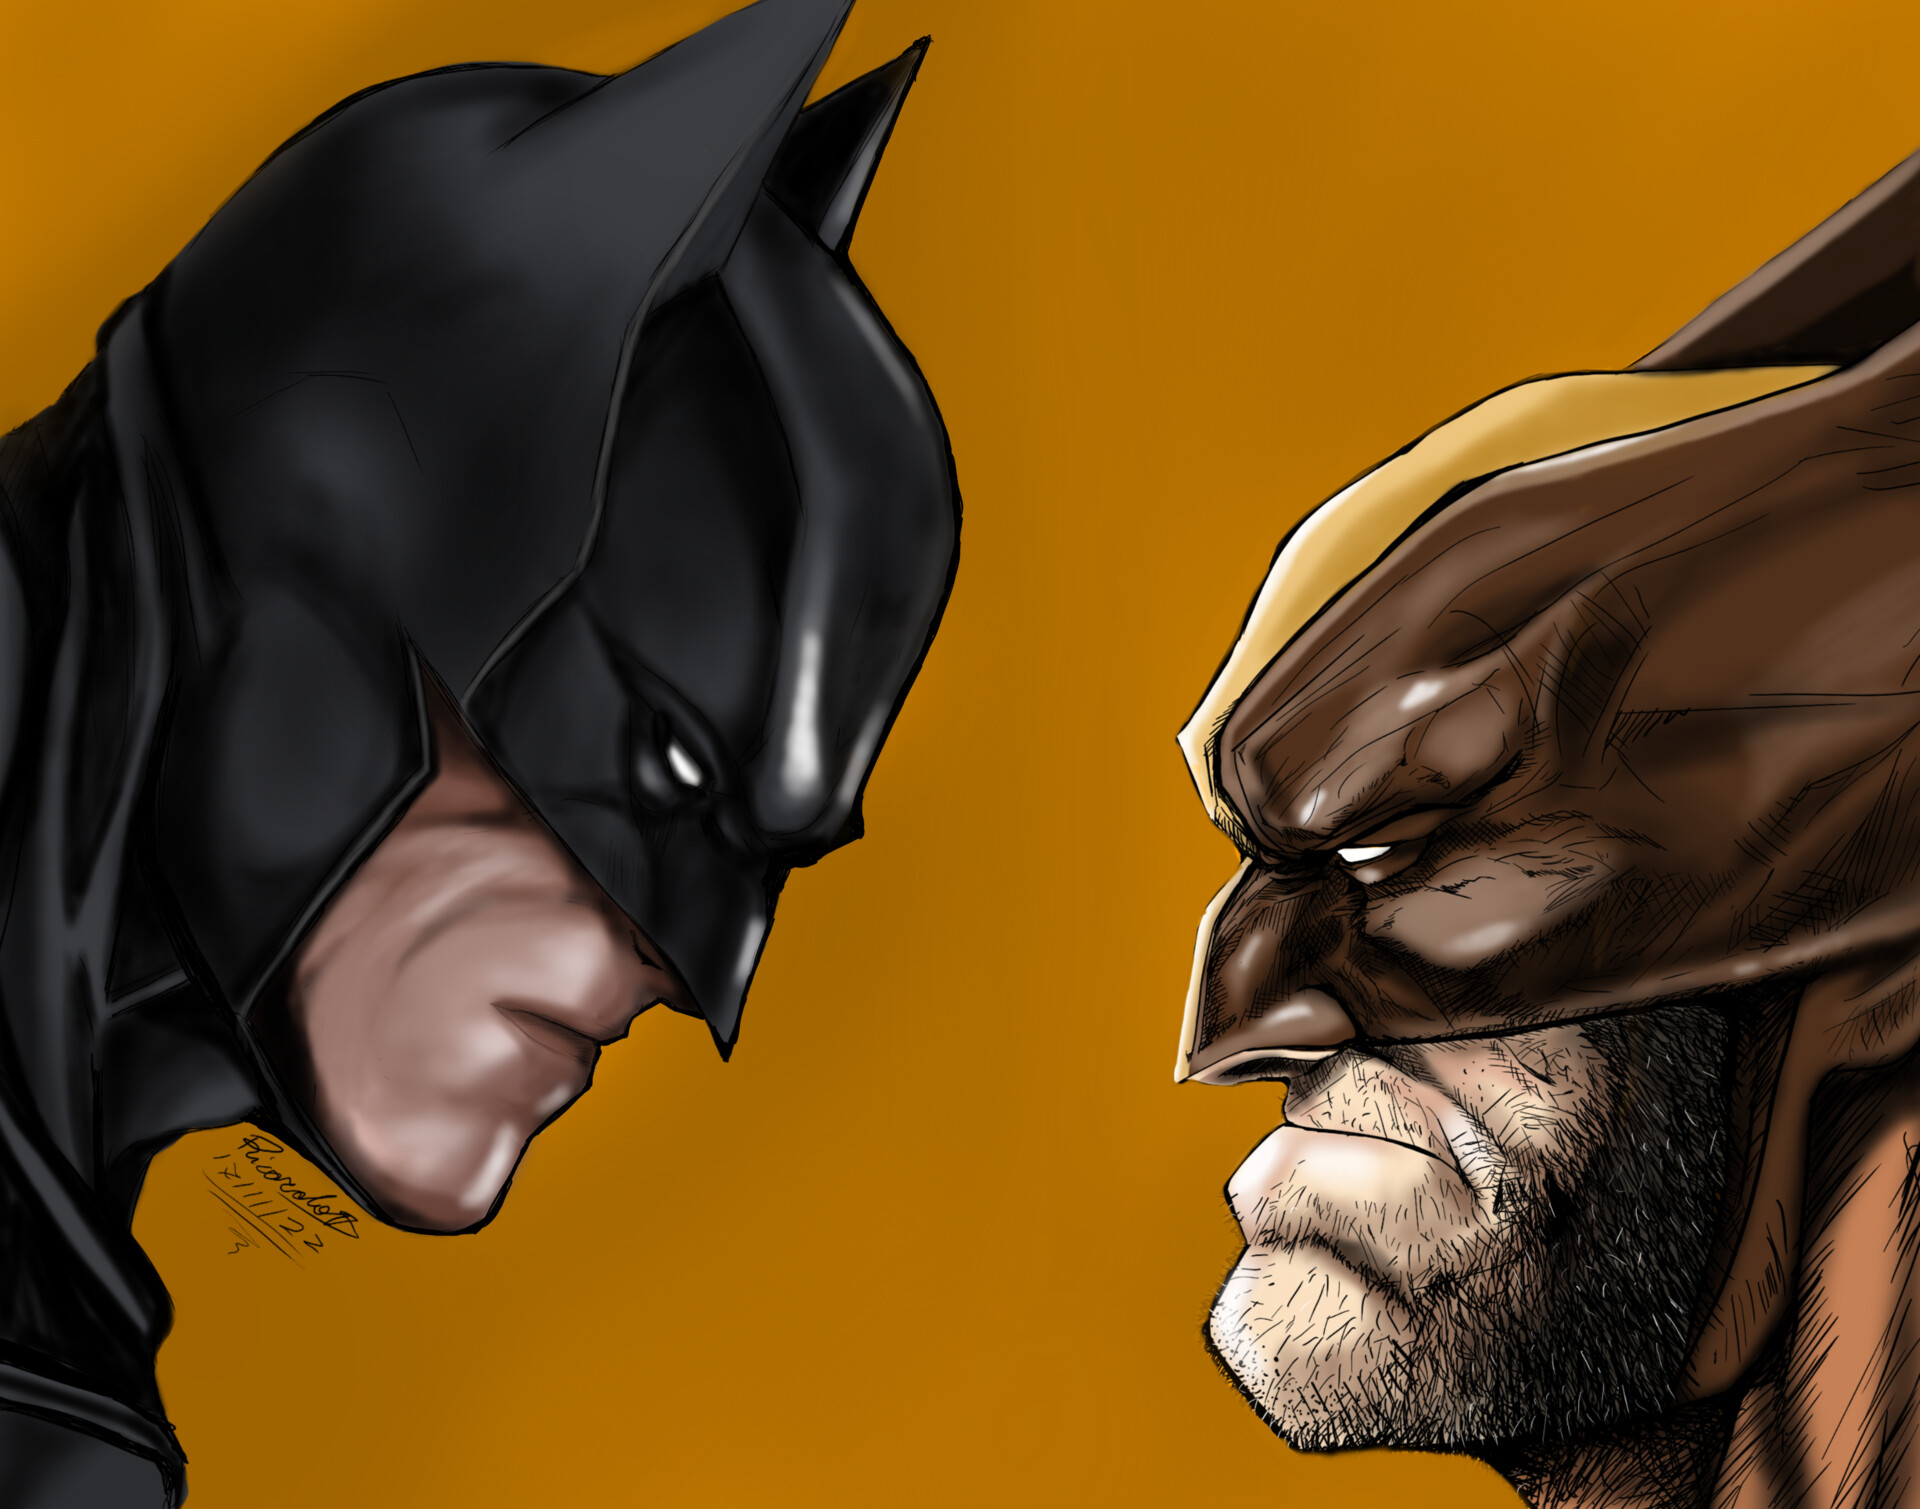 ArtStation - Batman vs Wolverine